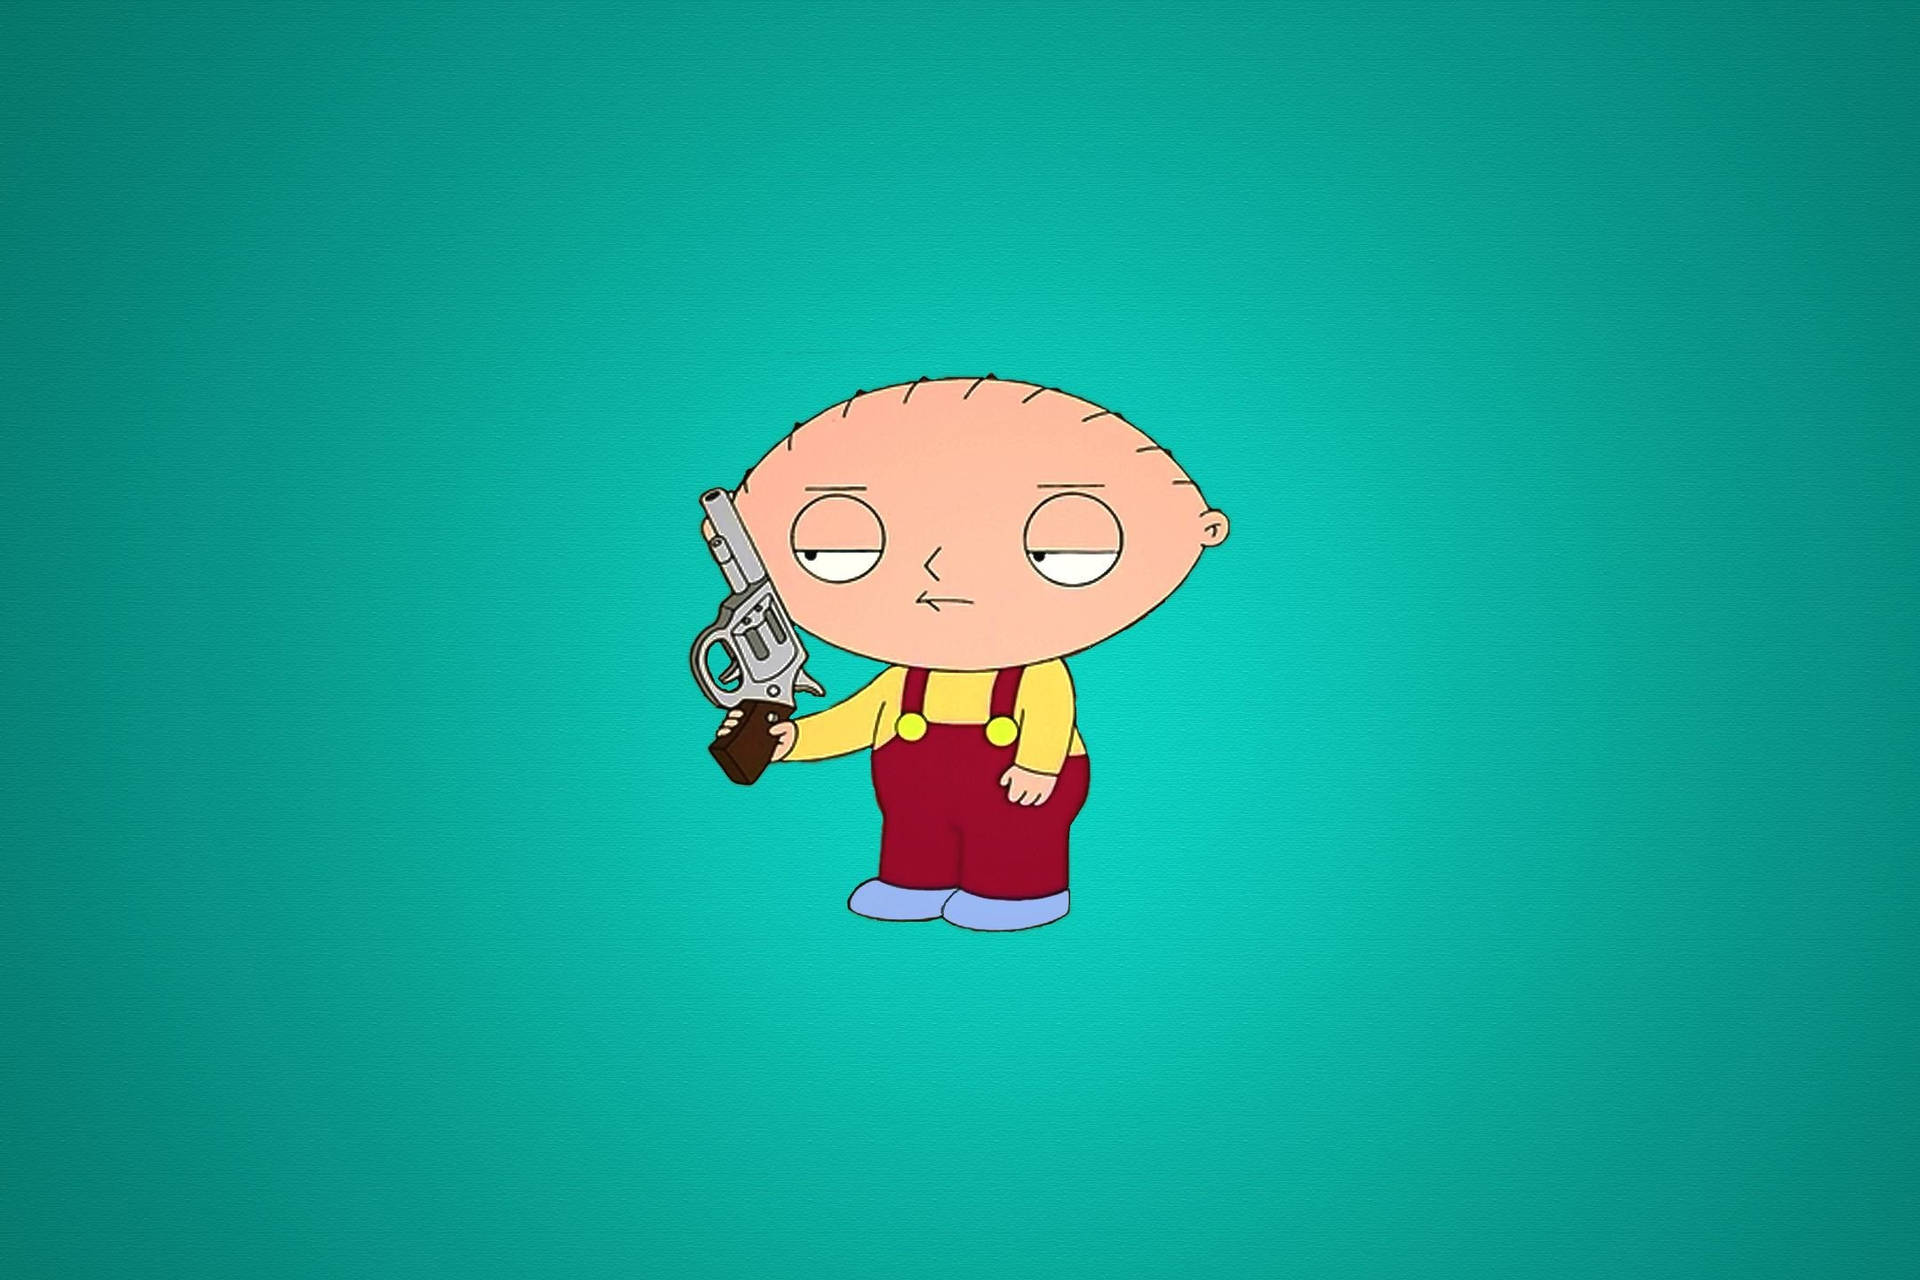 Stewie Griffin Holding A Gun